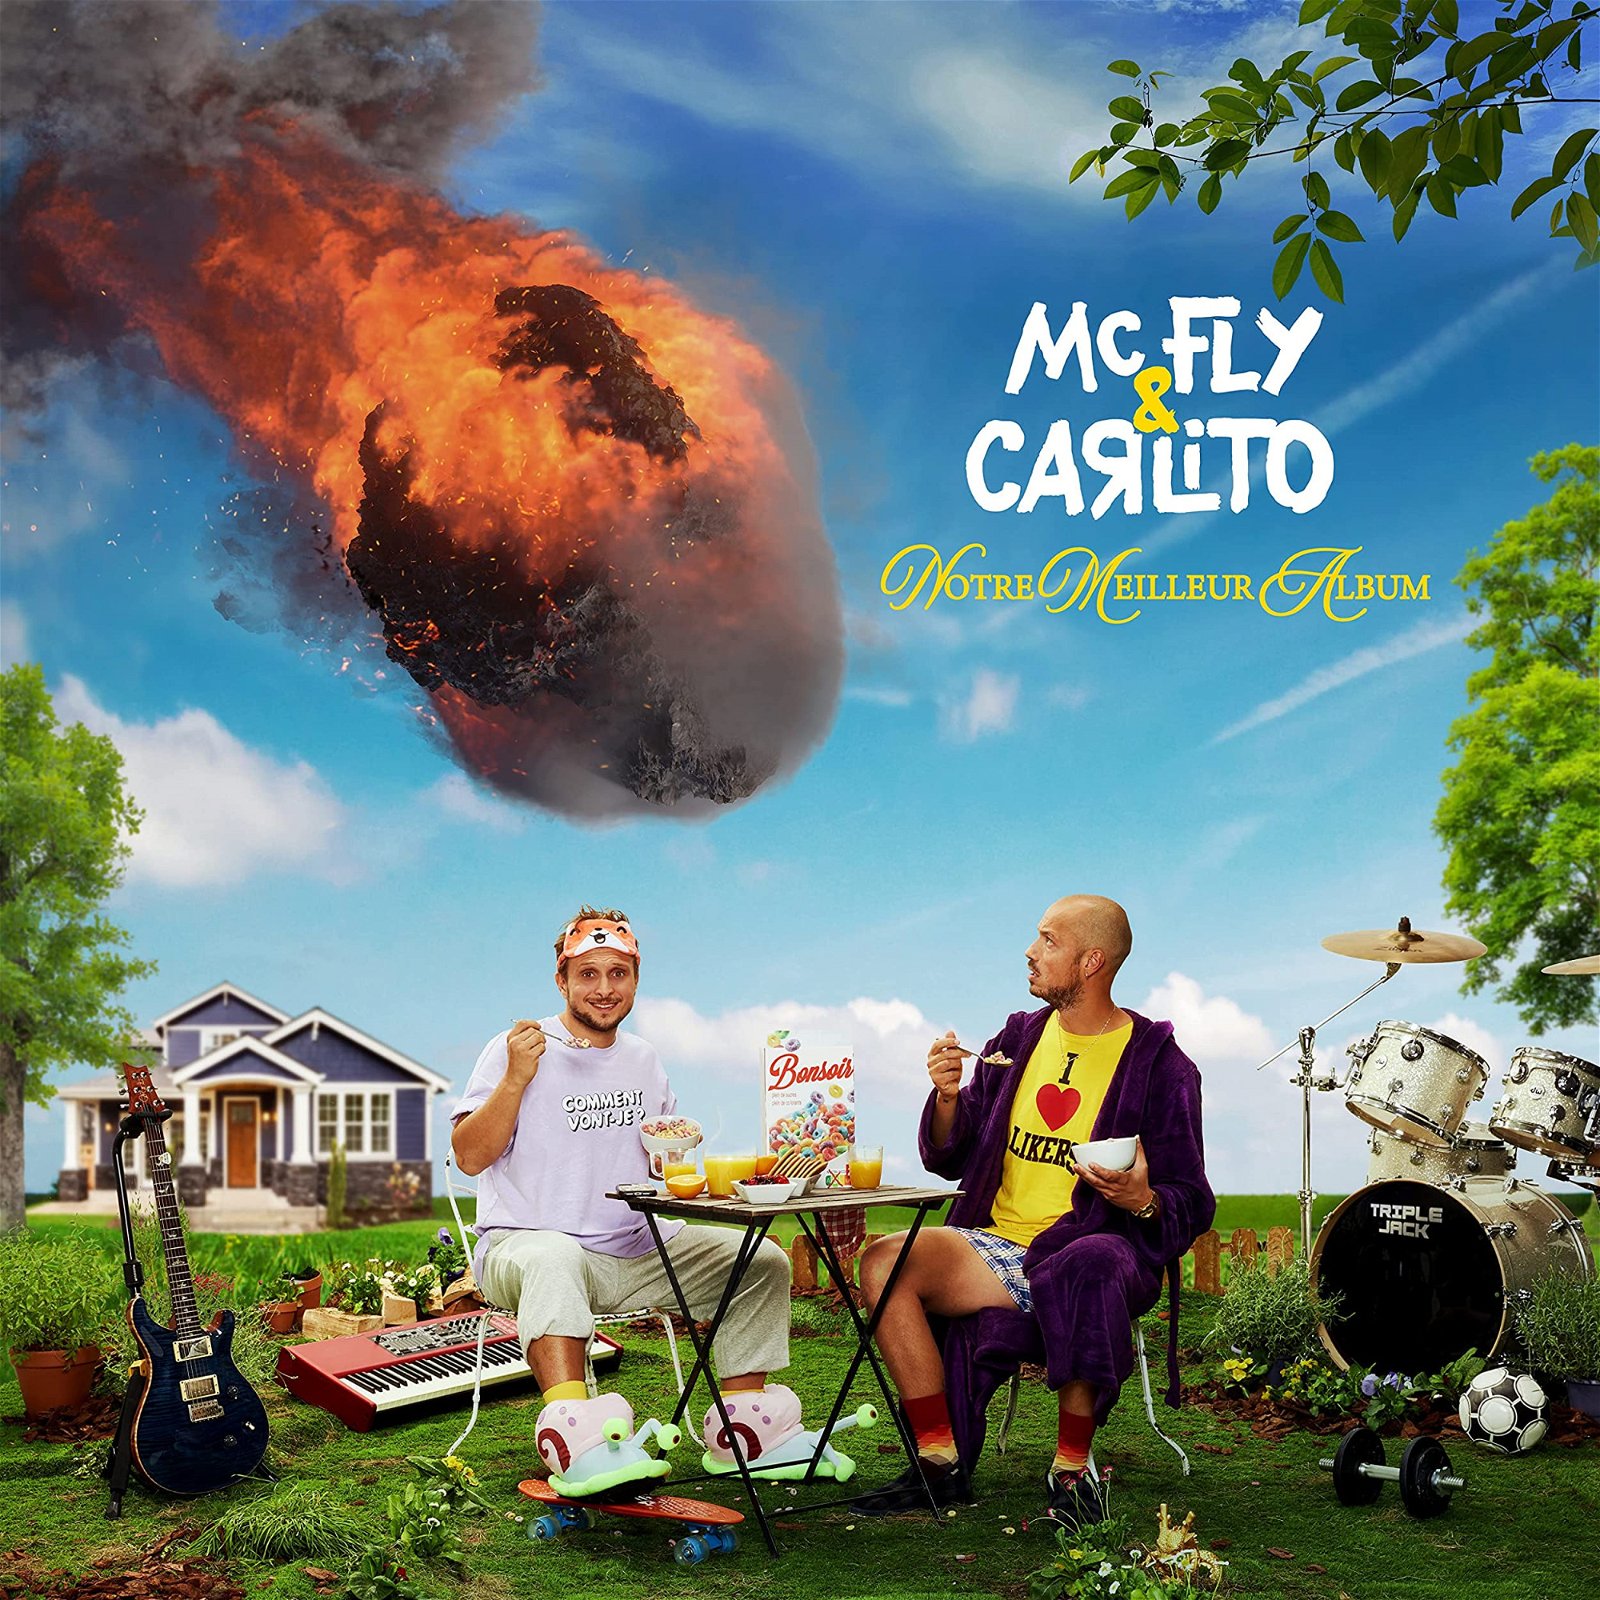 CD Shop - MCFLY & CARLITO NOTRE MEILLEUR ALBUM